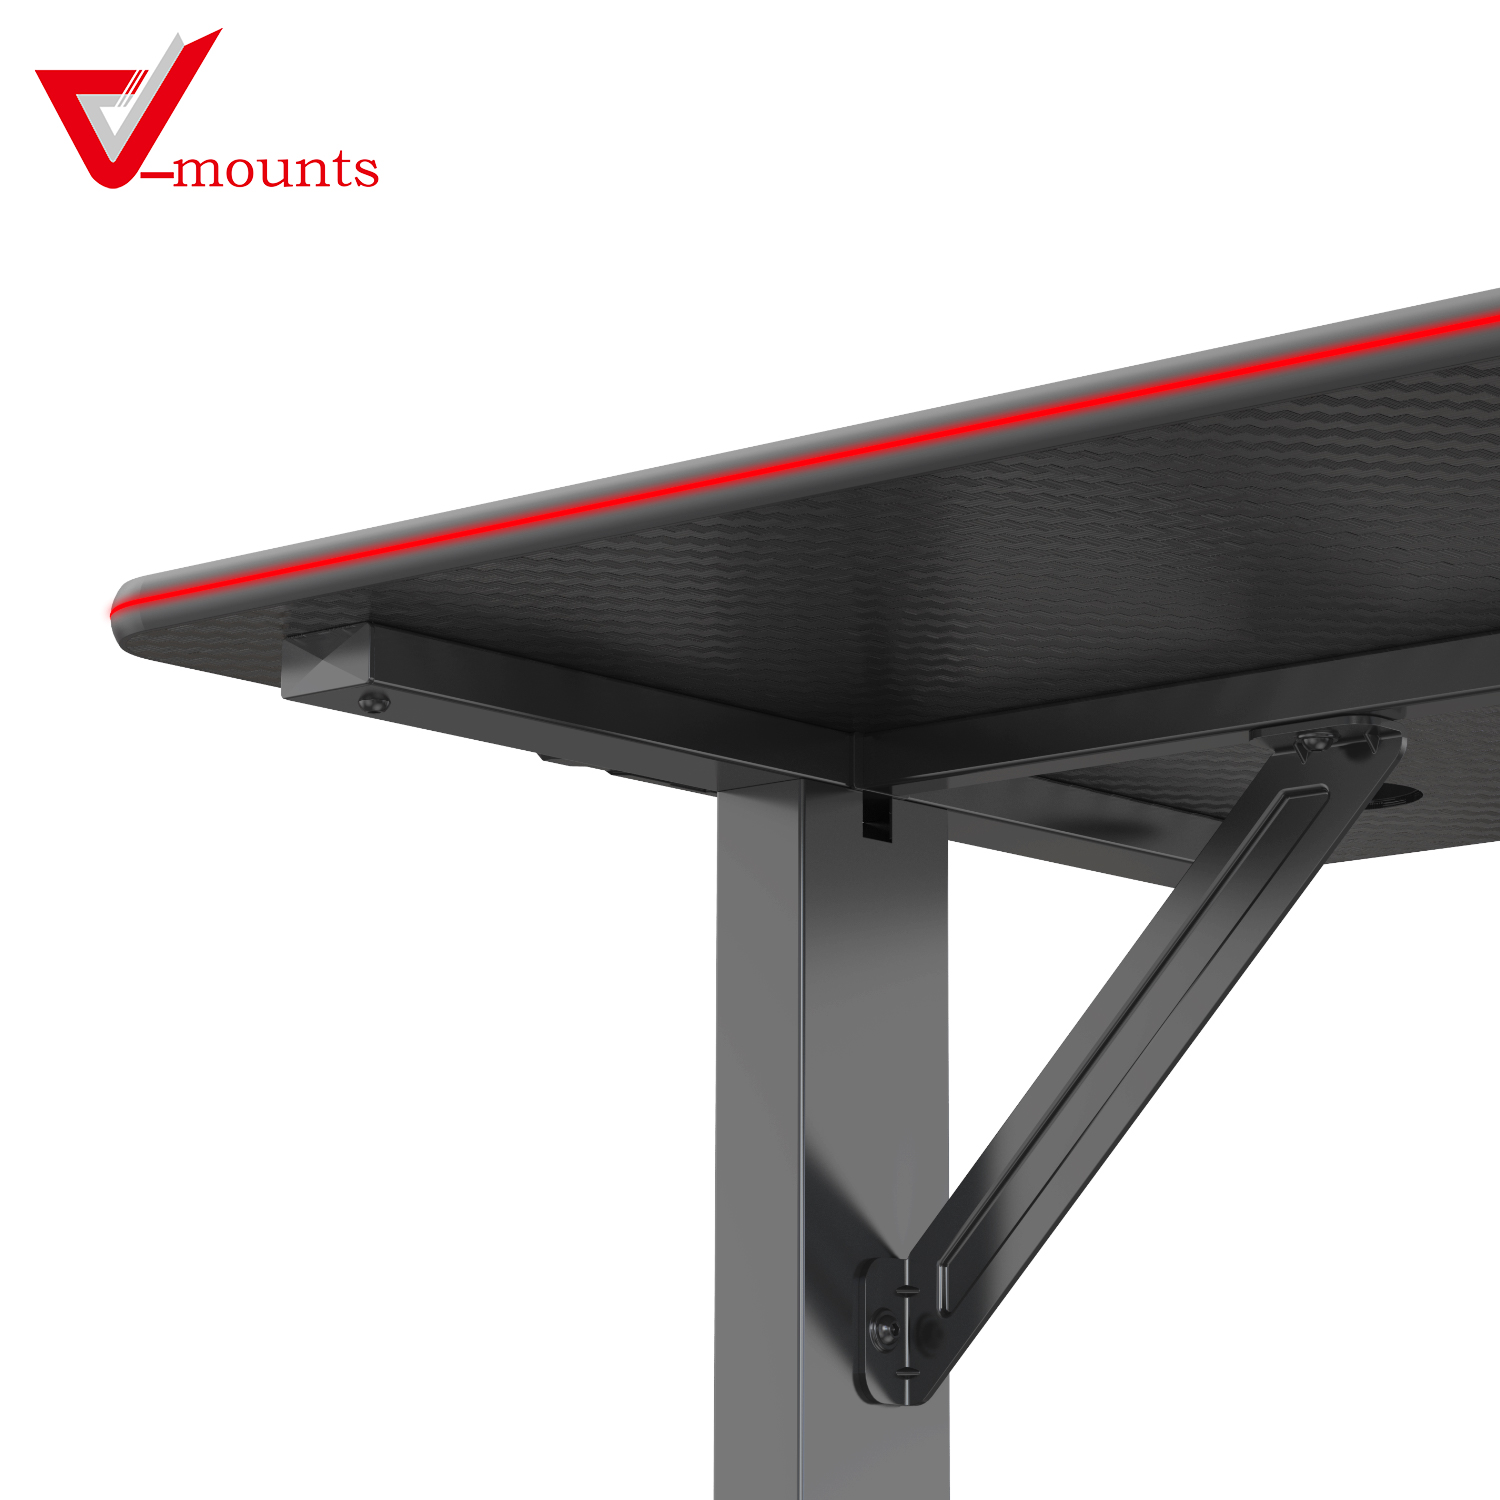 V-mounts ErgoSpot T Shaped RGB Gaming Desk VM-GT03D